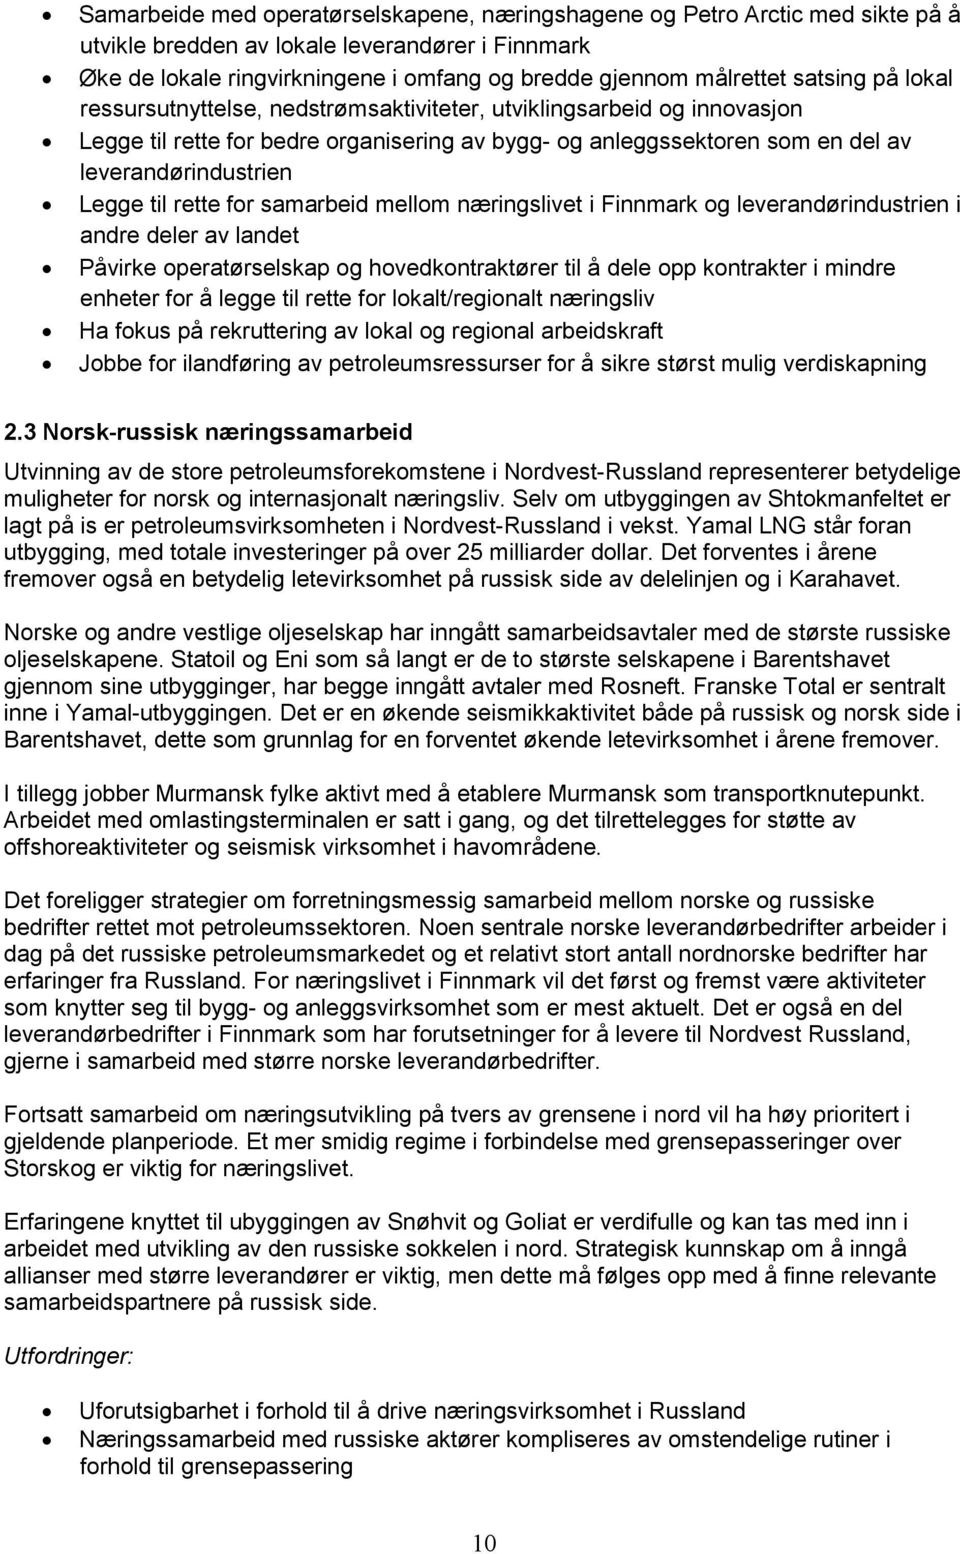 til rette for samarbeid mellom næringslivet i Finnmark og leverandørindustrien i andre deler av landet Påvirke operatørselskap og hovedkontraktører til å dele opp kontrakter i mindre enheter for å